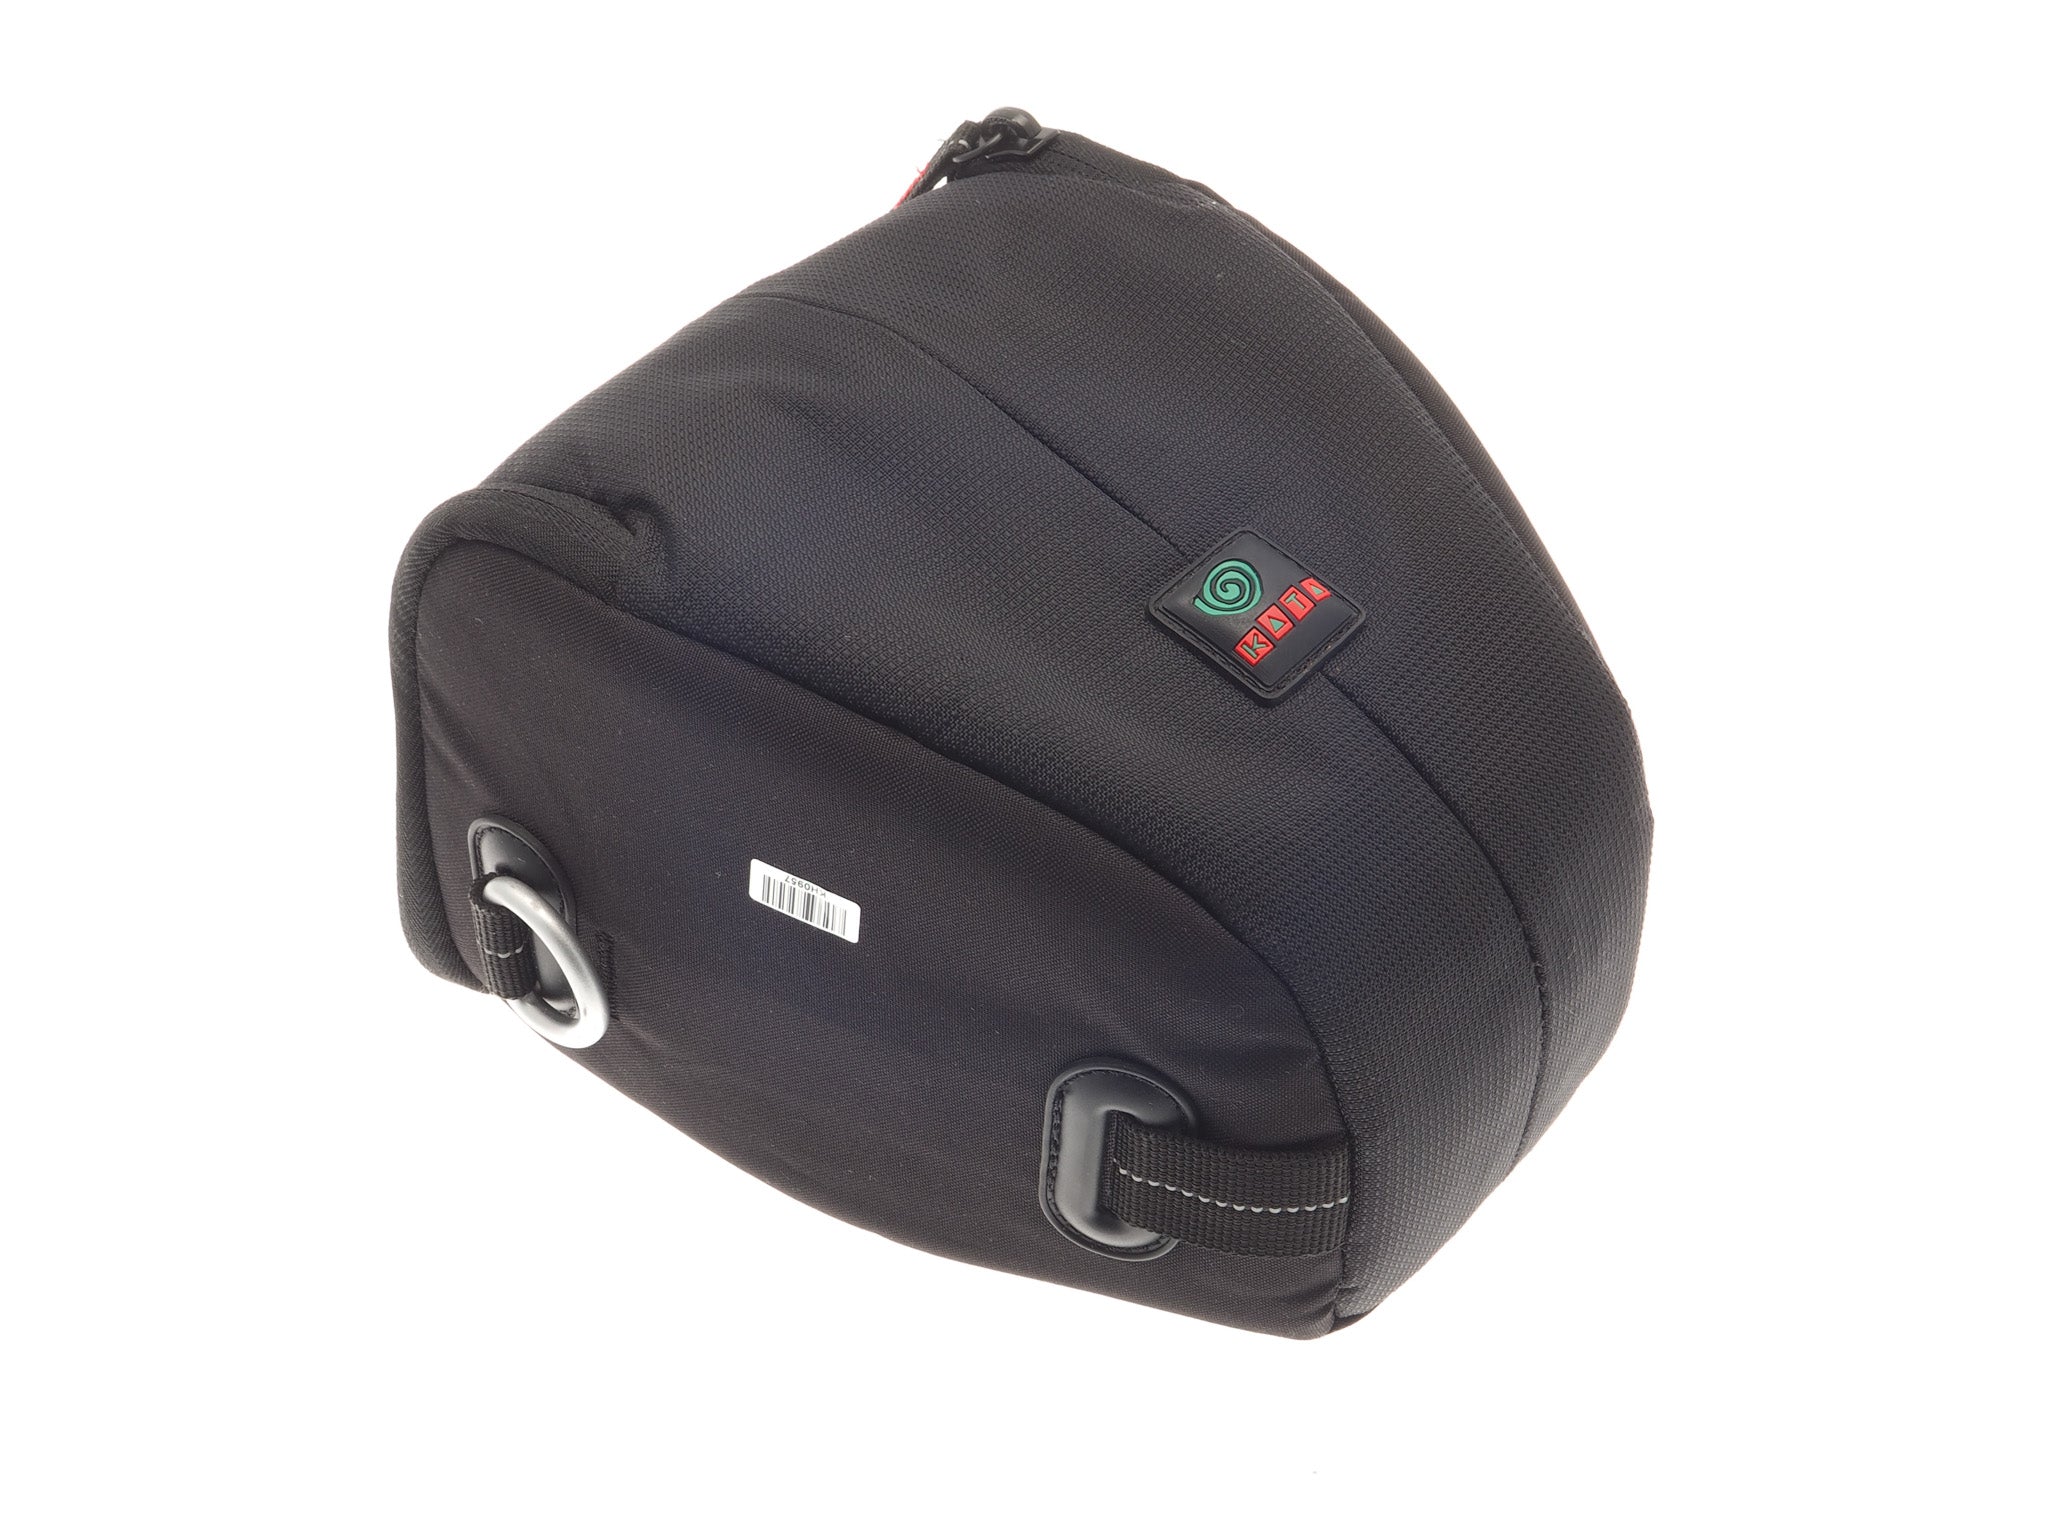 Buy Kata DSLR Camera Bag Black [KT DL-3N1-33] Online - Best Price Kata DSLR  Camera Bag Black [KT DL-3N1-33] - Justdial Shop Online.